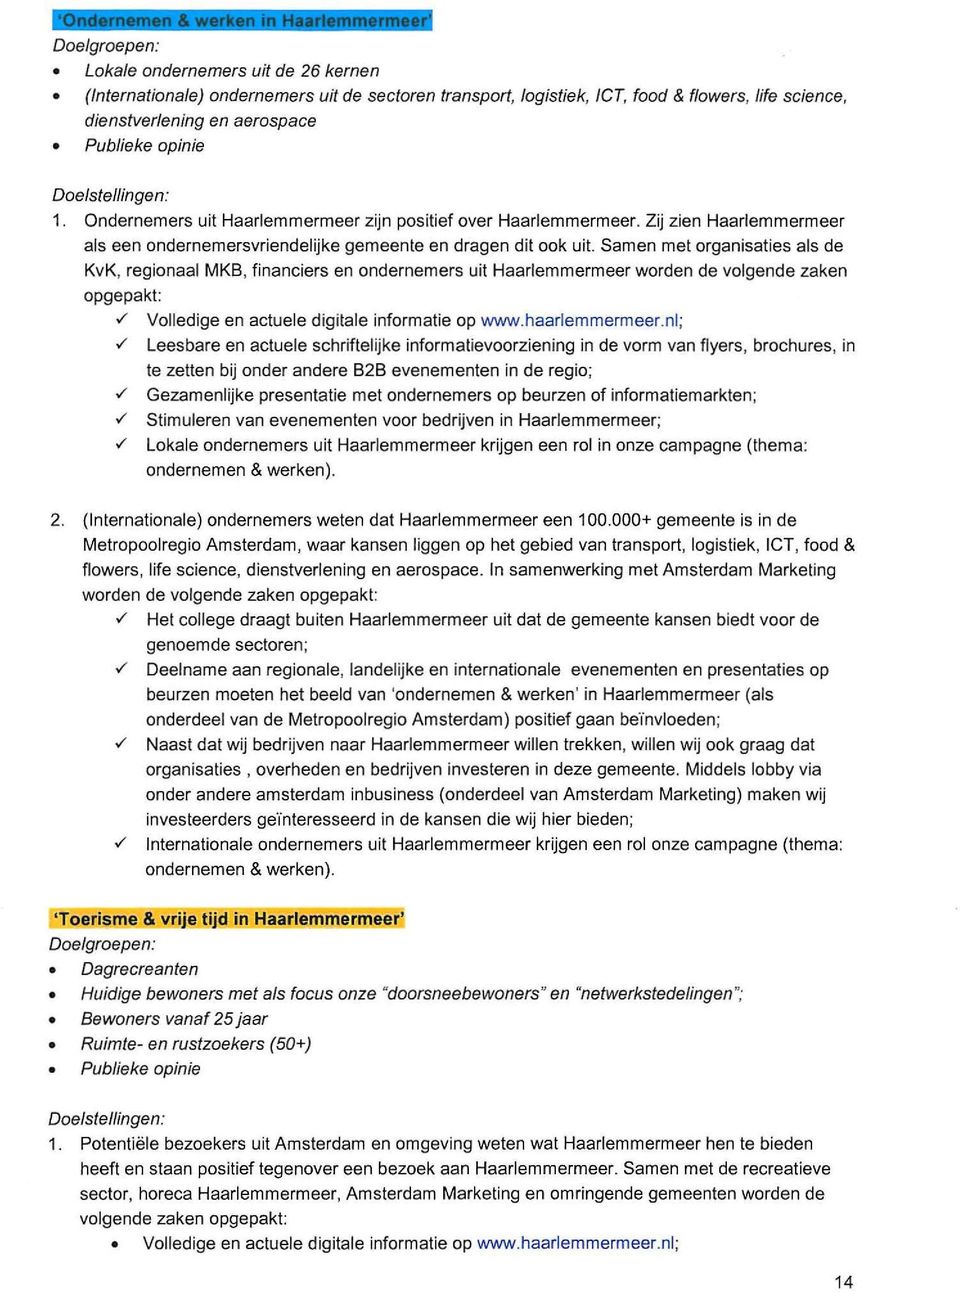 Samen met organisaties als de KvK, regionaal MK8, financiers en ondernemers uit Haarlemmermeer worden de volgende zaken opgepakt:./ Volledige en actuele digitale informatie op www.haarlemmermeer.nl;.